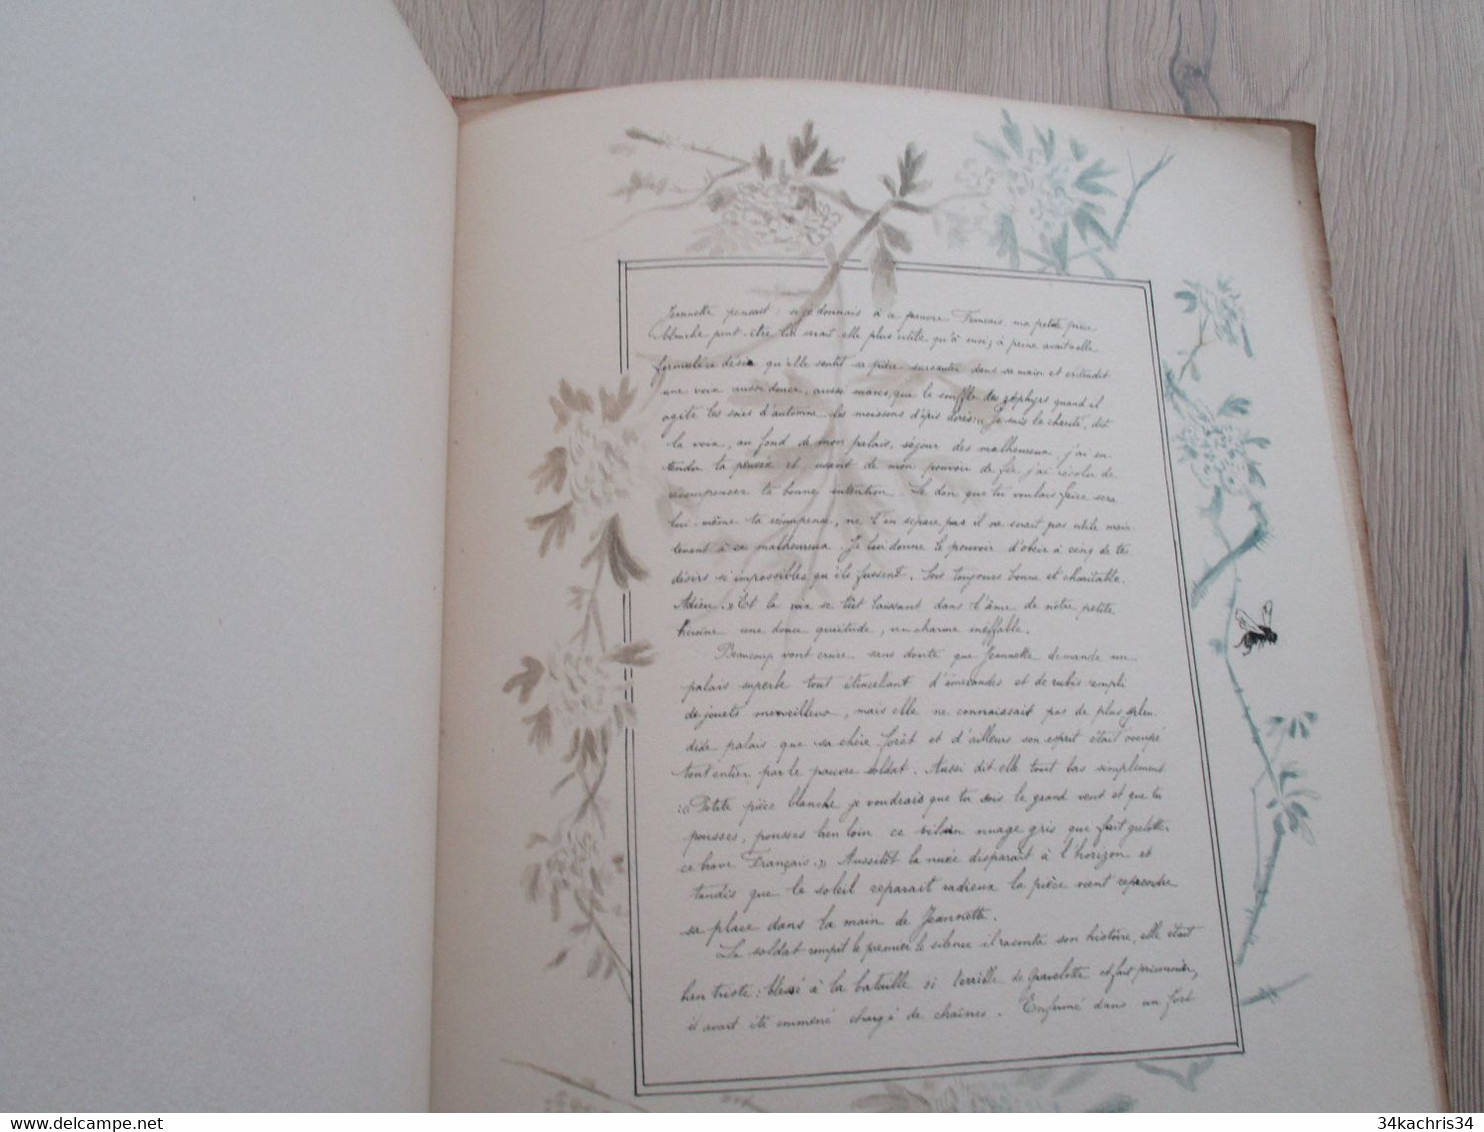 Cahier Manuscrit dessiné 1891 P.Fagart à ma cousine jeanne D. famille Jourdain hommage à la paix après guerre de 1870